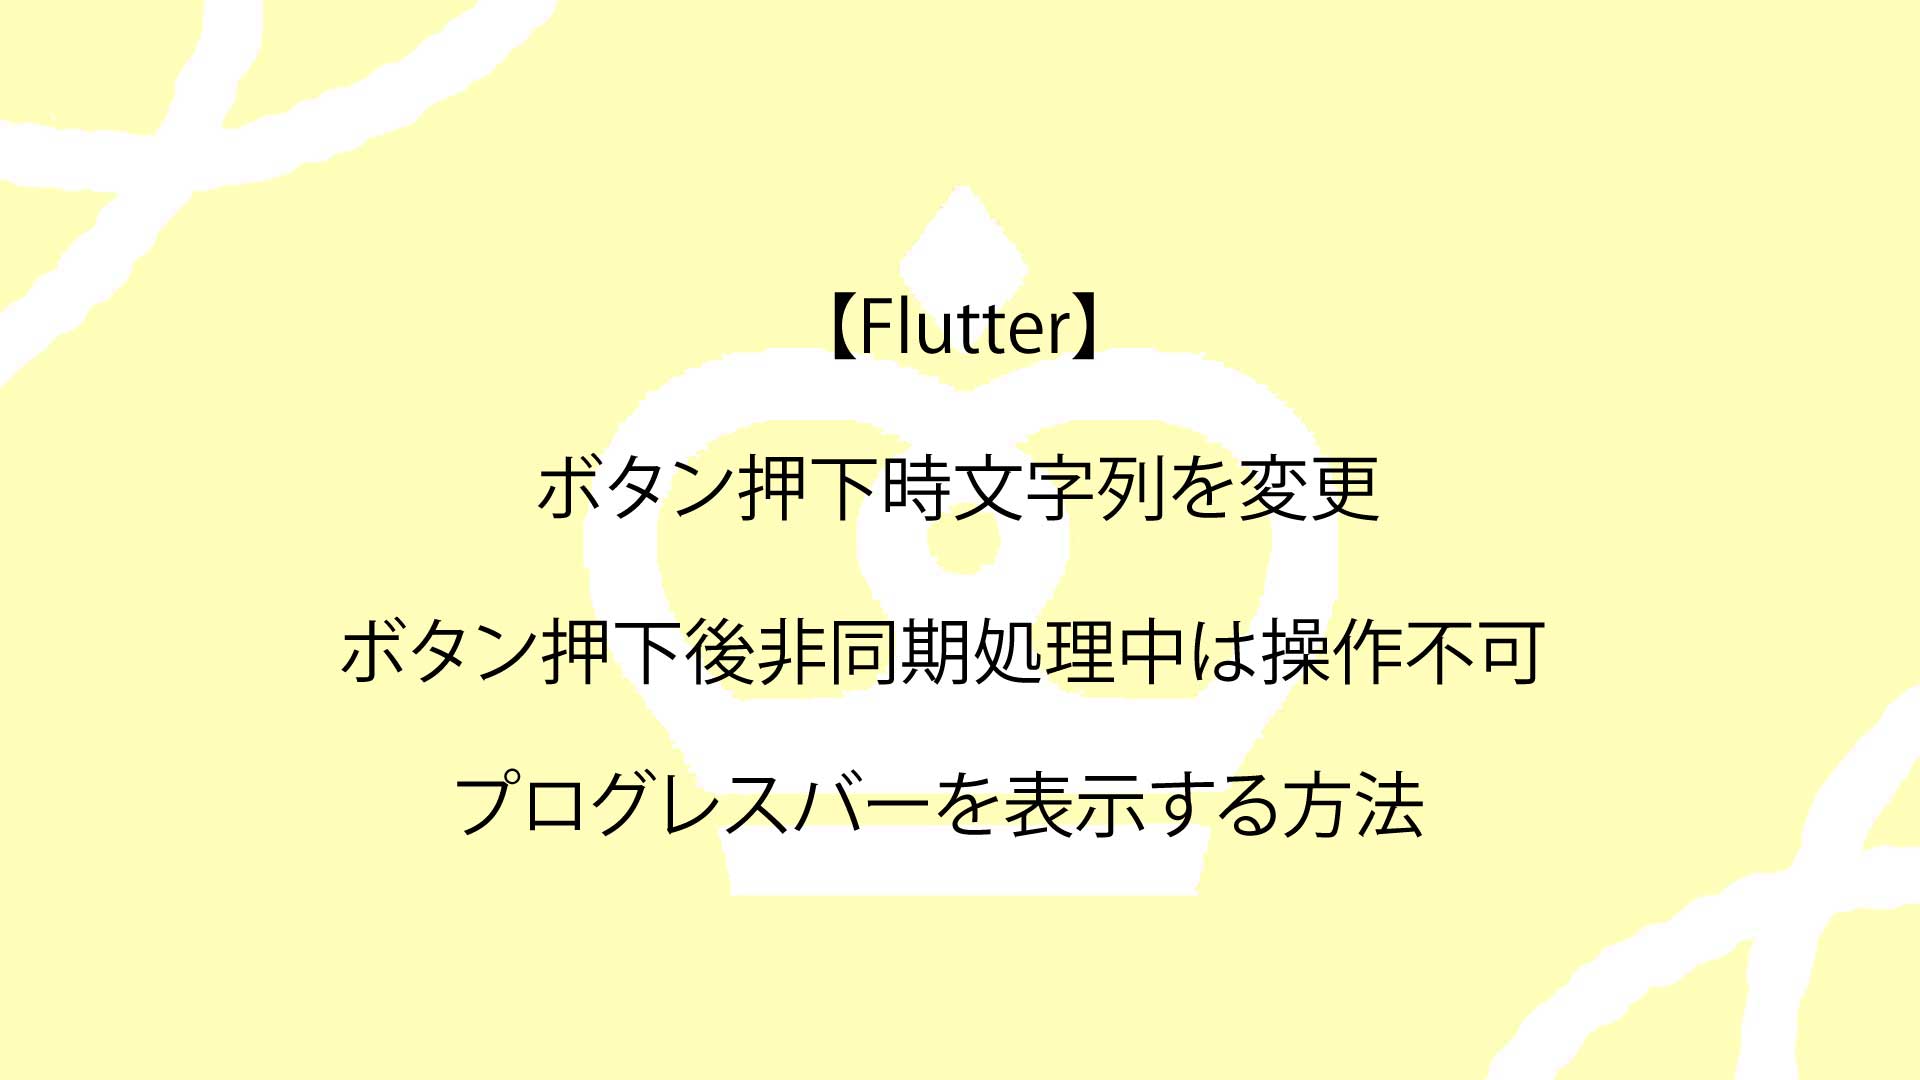 【Flutter】ボタン押下時文字列を変更・ボタン押下後非同期処理中は操作不可にしプログレスバーを表示する方法を徹底解説